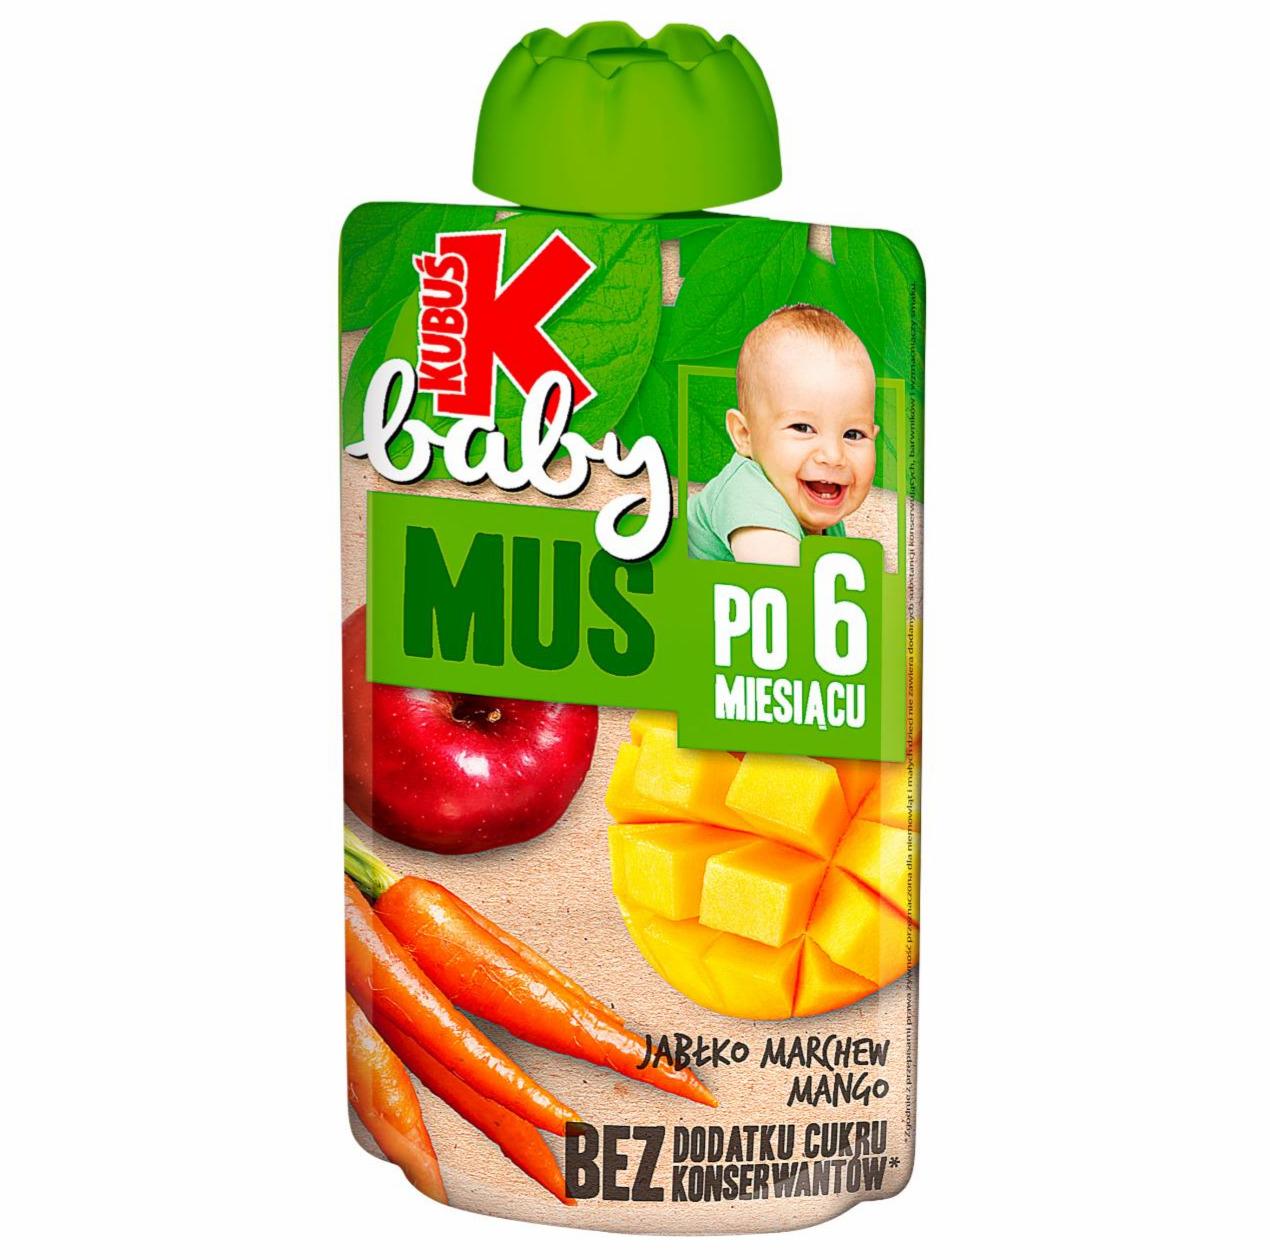 Zdjęcia - Kubuś Baby Mus po 6 miesiącu jabłko marchew mango 100 g